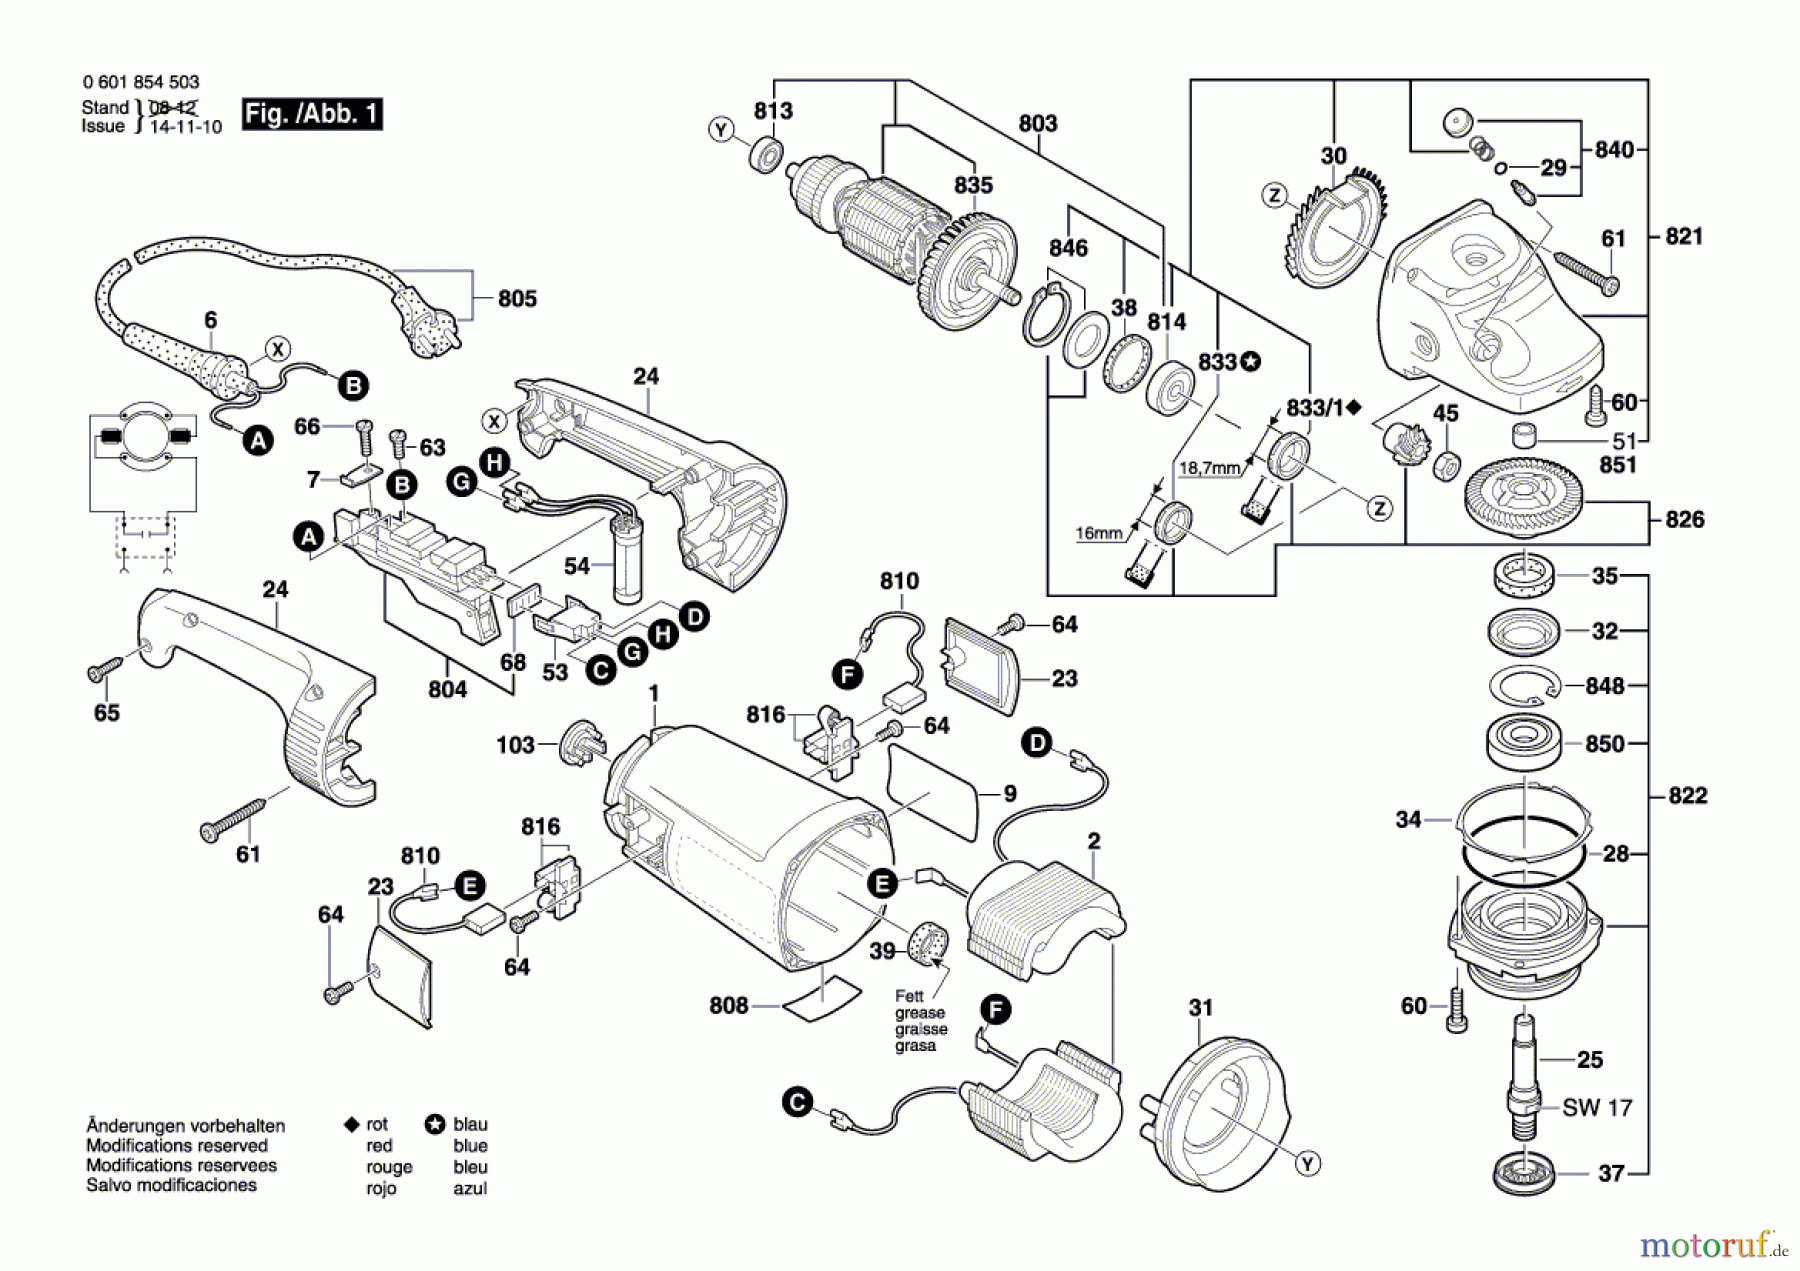  Bosch Werkzeug Winkelschleifer GWS 2400-23 JH Seite 1